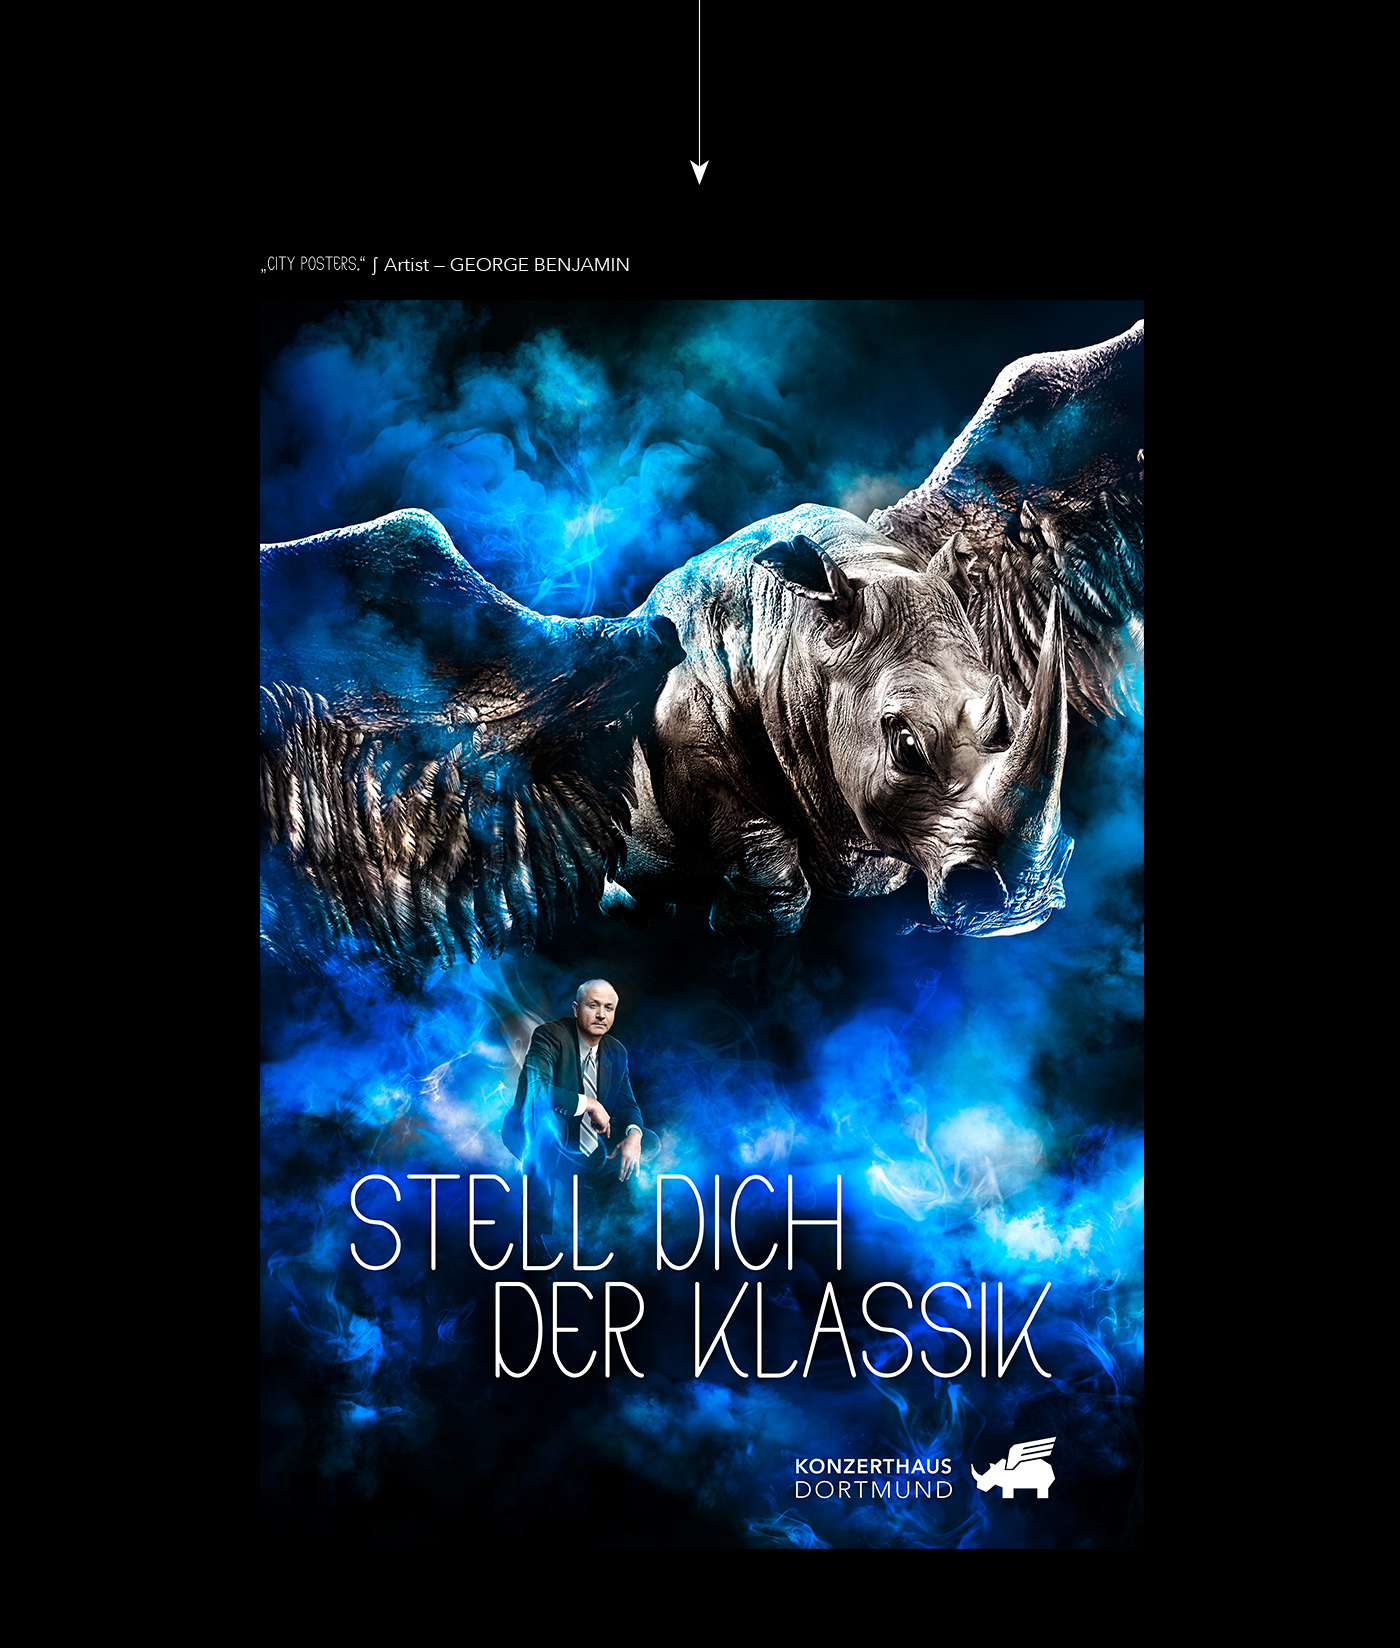 Konzerthaus Dortmund Jung von Matt xymena duzy animal composing smoke campaign orchestra event book cover 3d effect Rhinoceros Rhino nashorn CGI